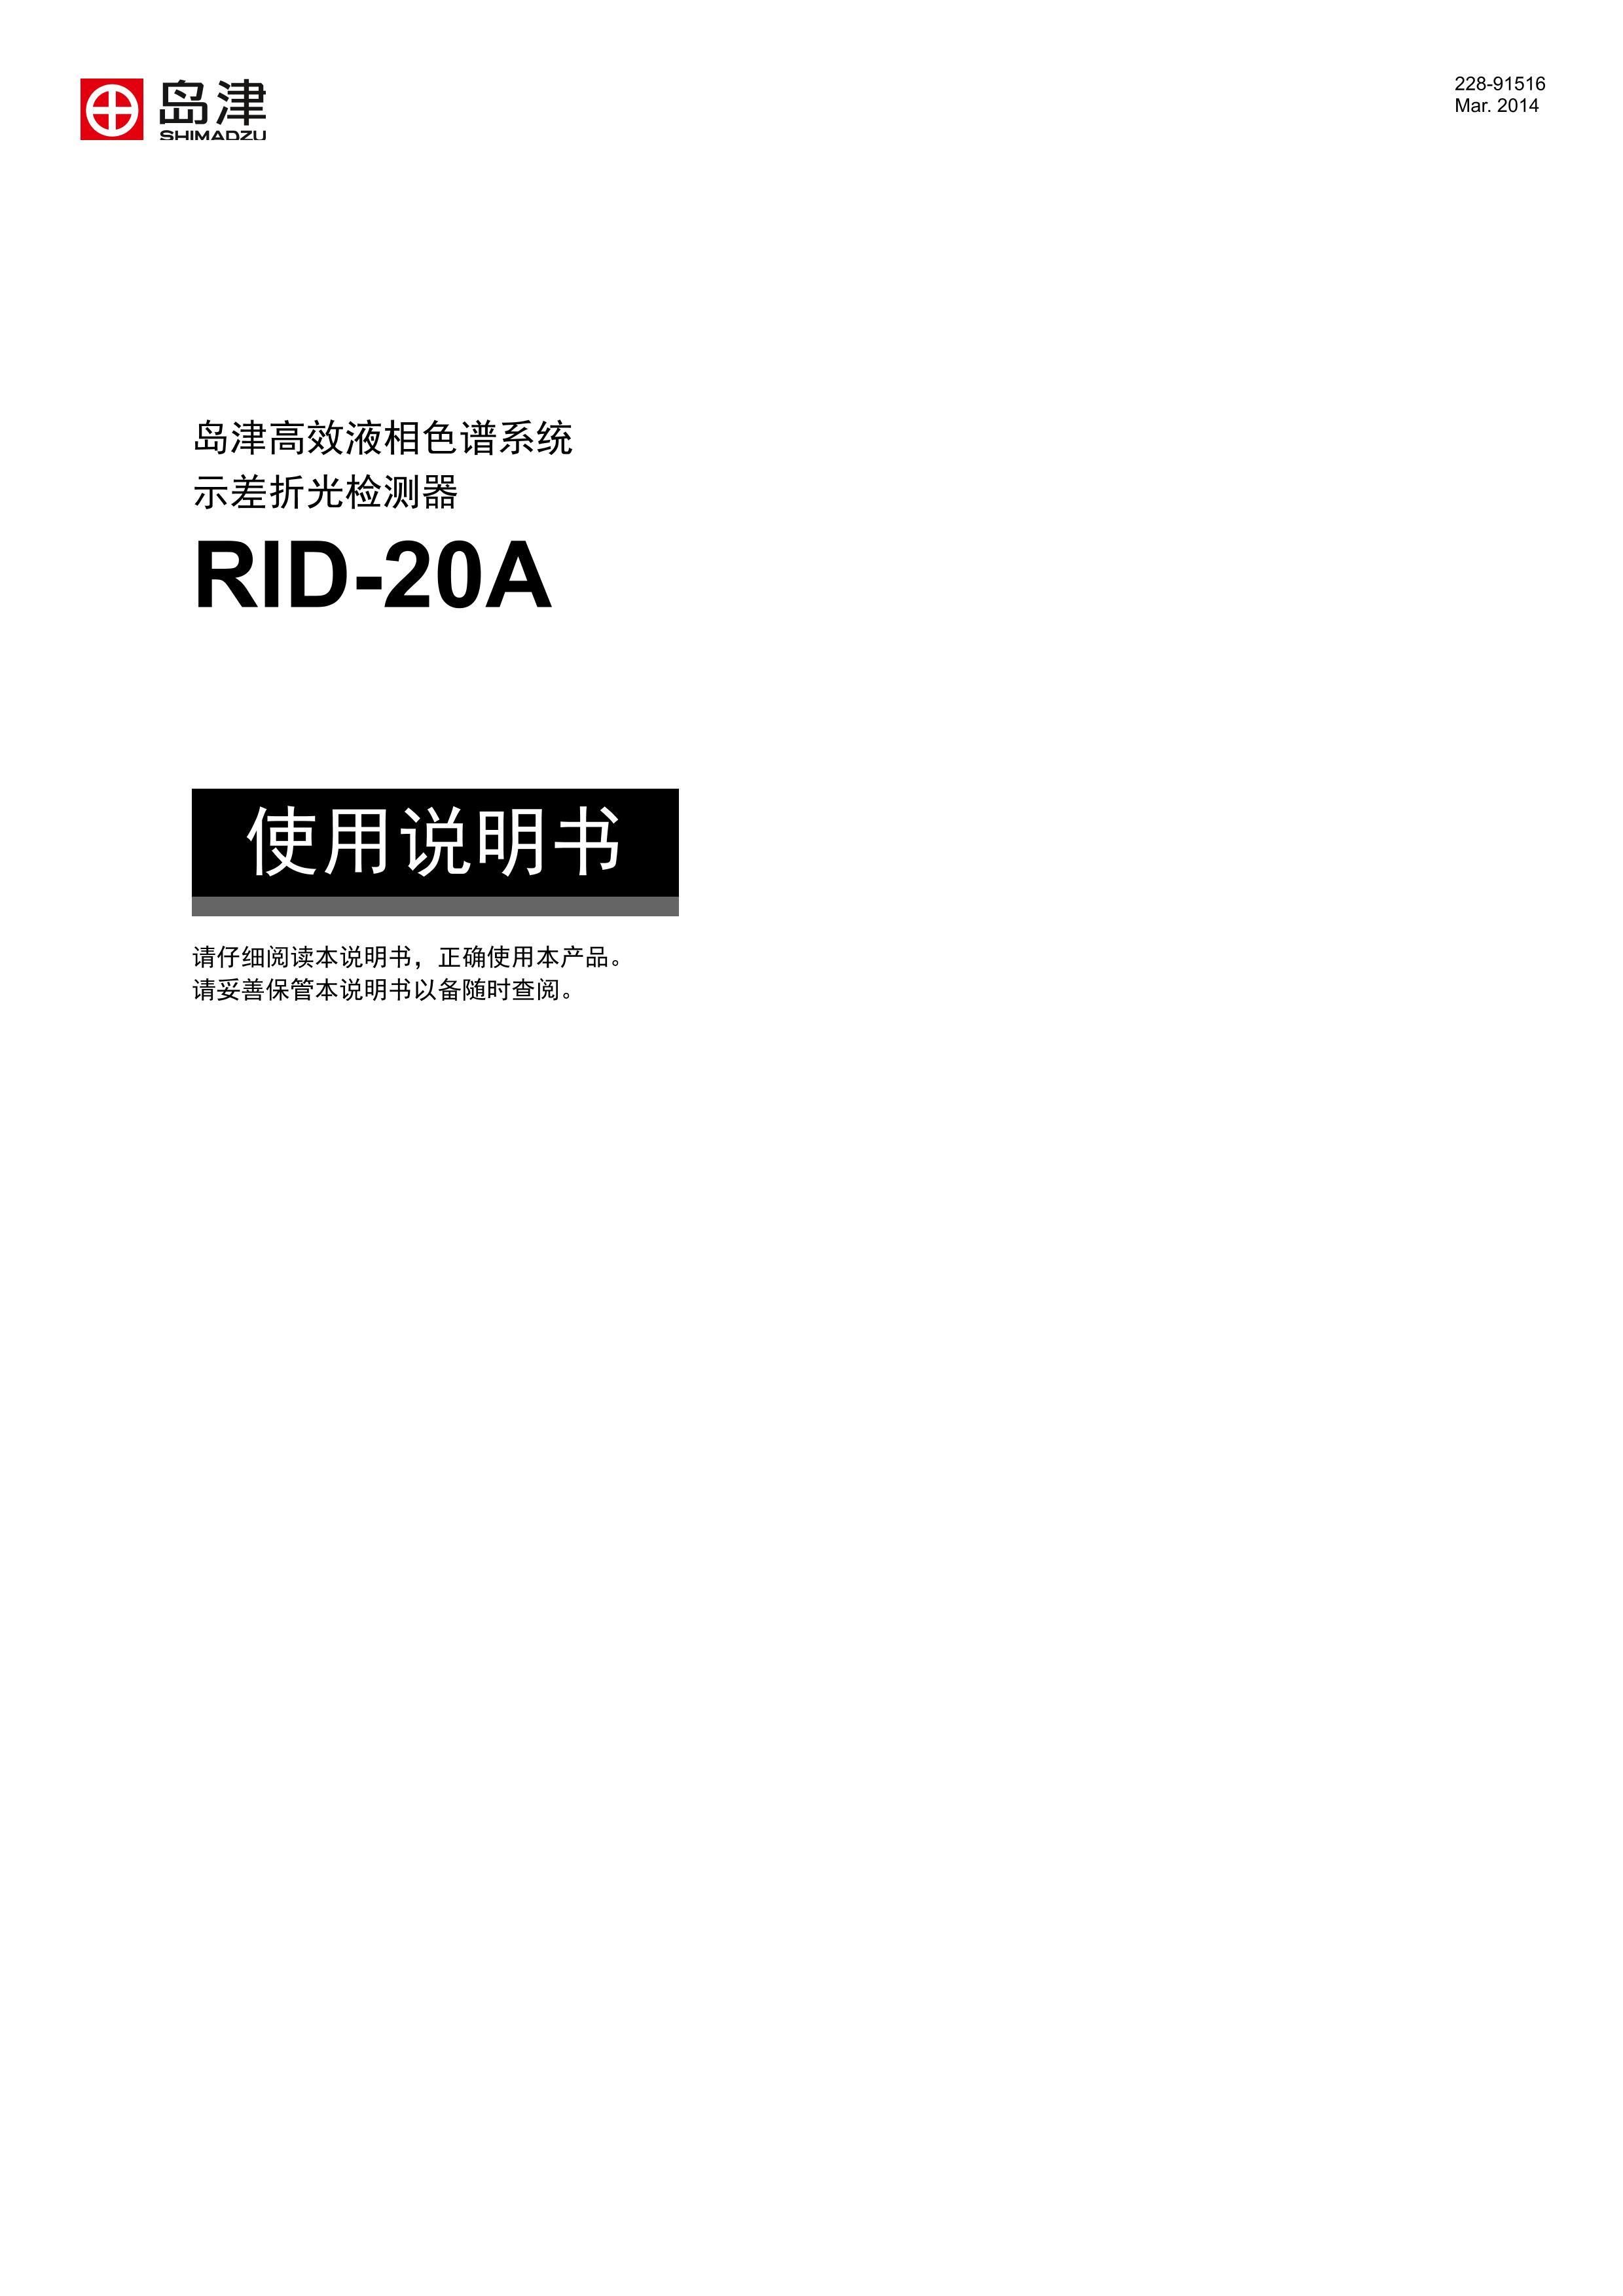 RID-20A_IM_ZH-CN.pdf1ҳ